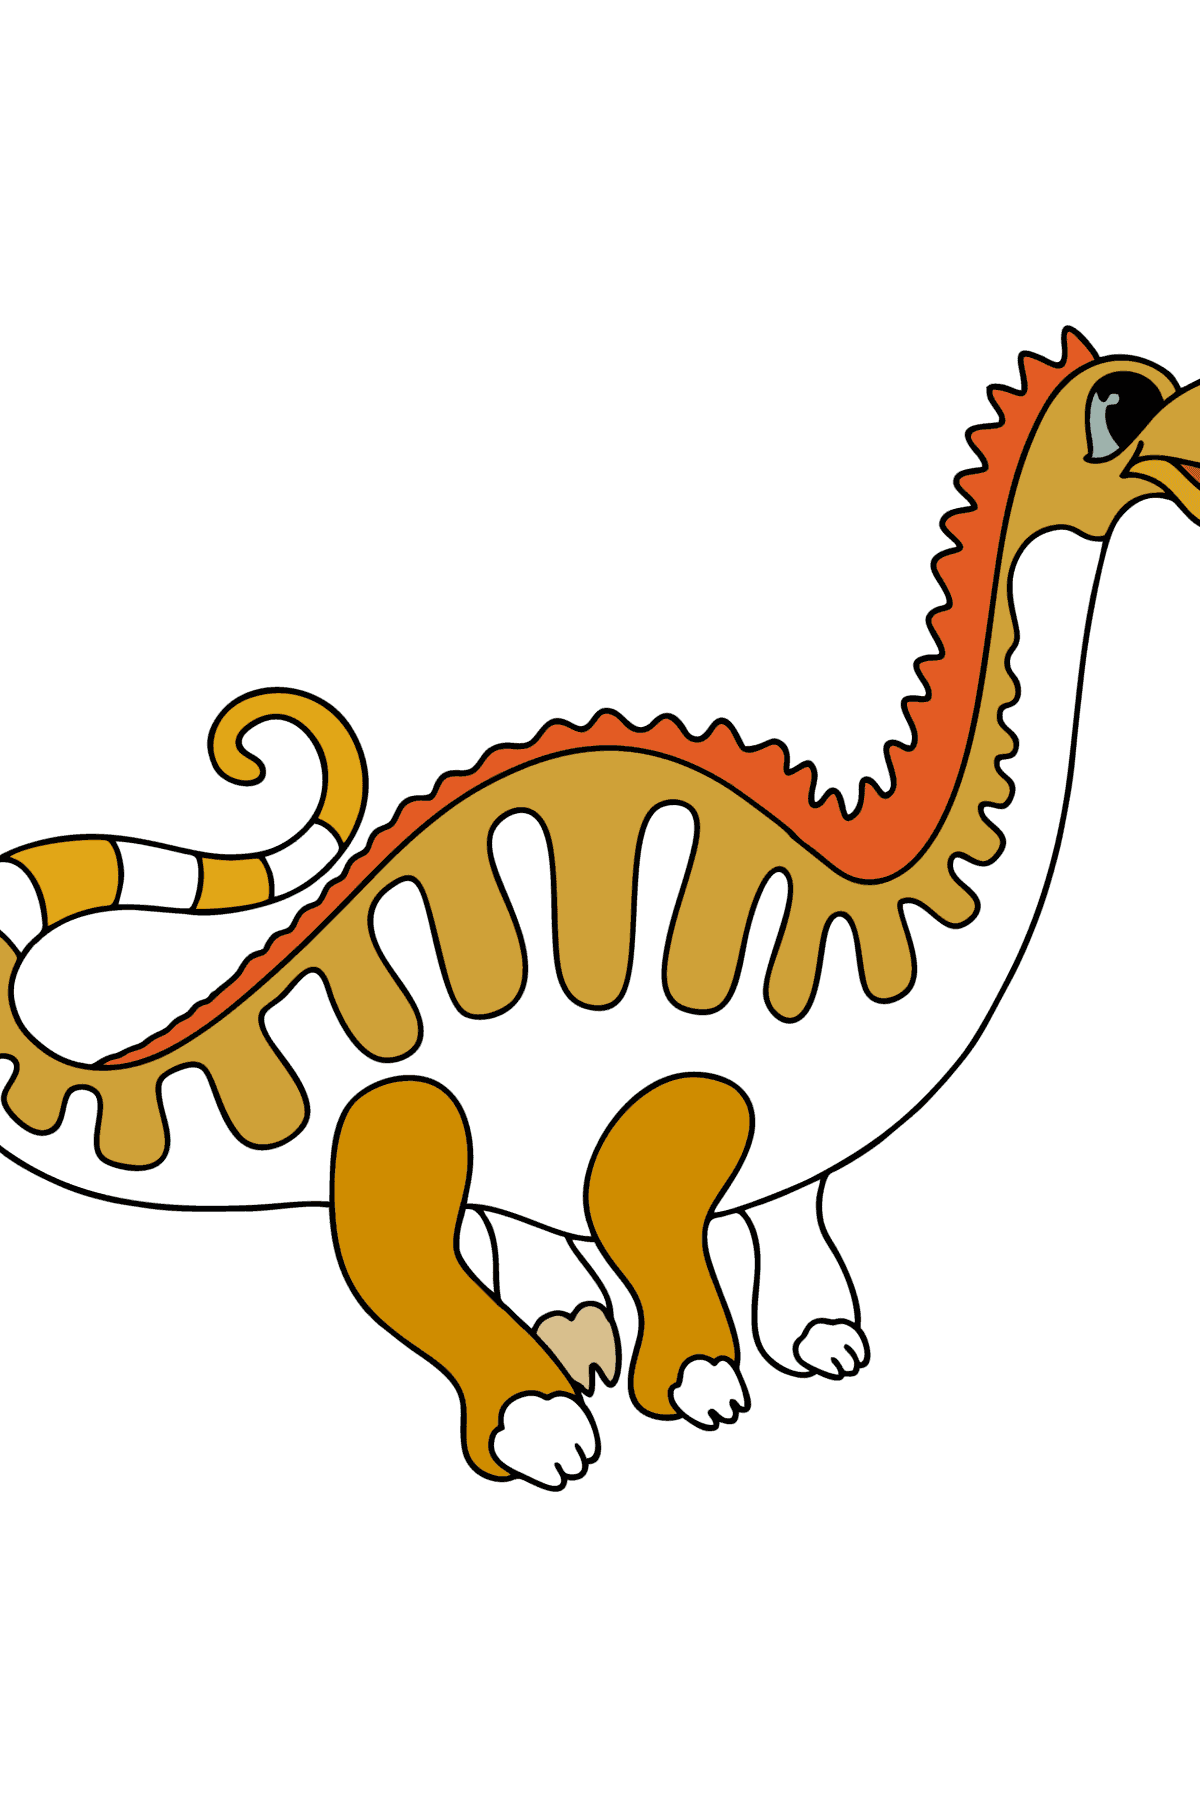 Målarbild apatosaurus - Målarbilder För barn